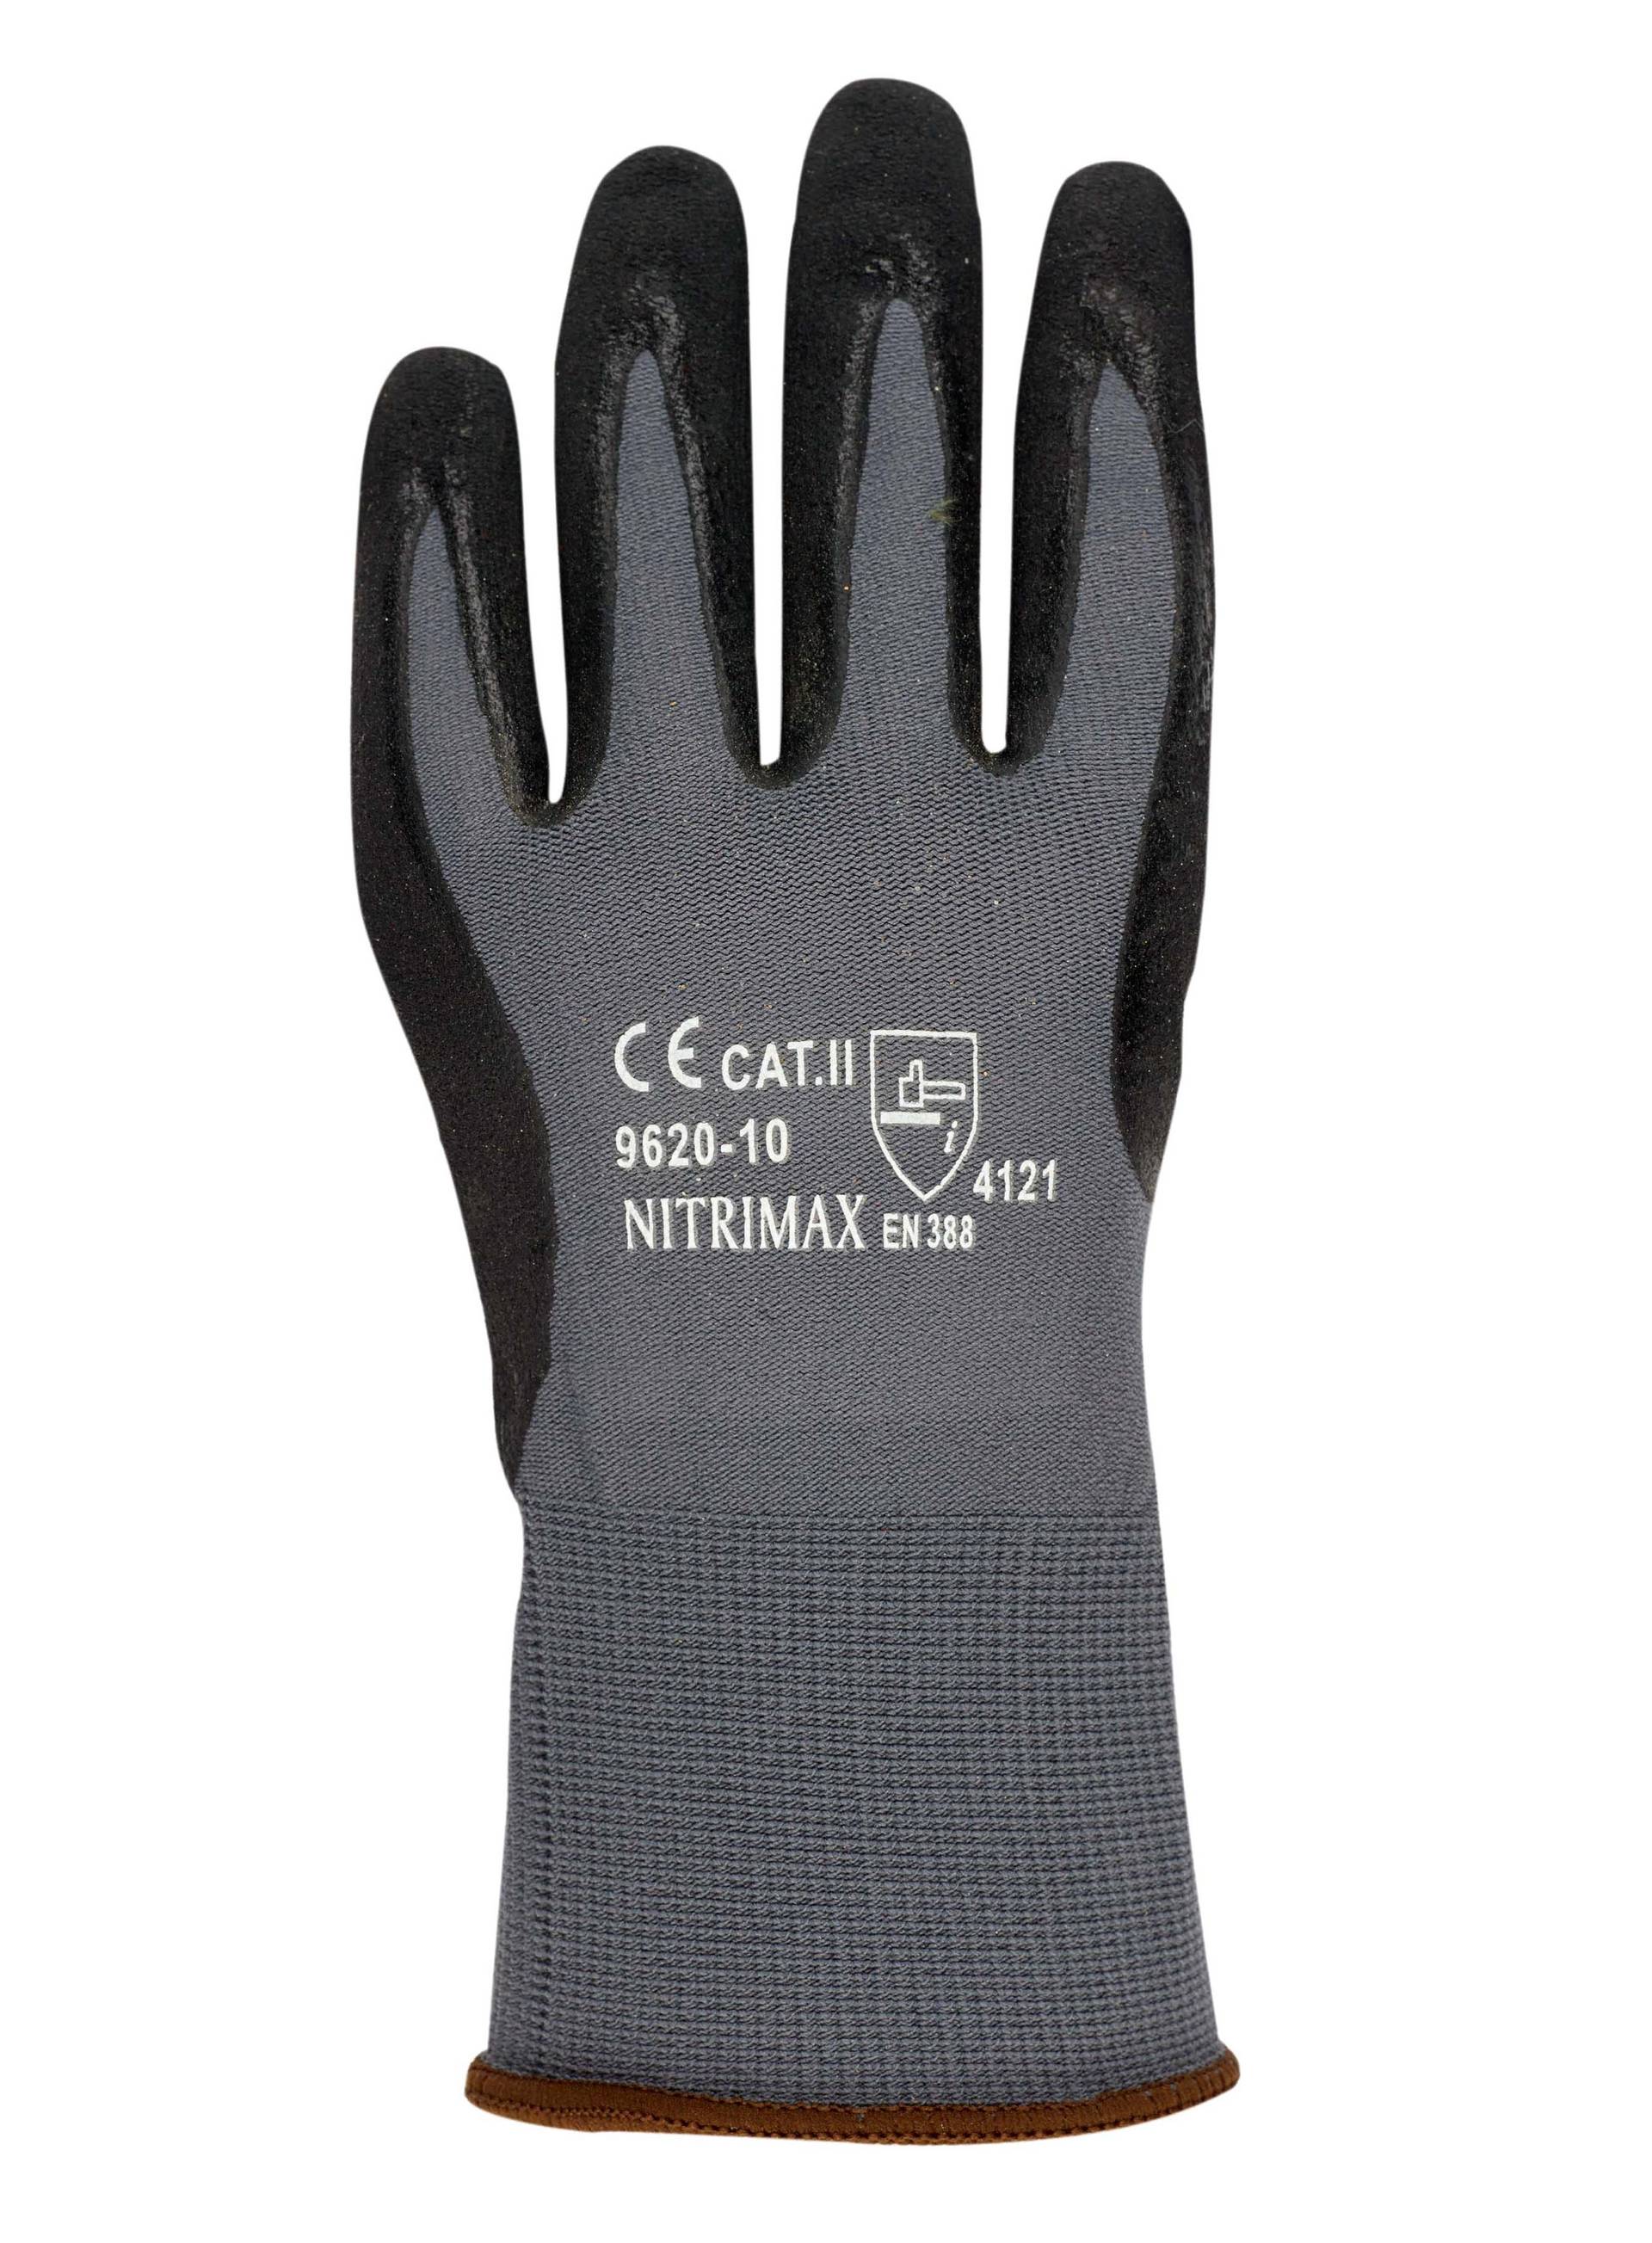 Handschuhe für Präzisionsarbeiten   NITRIMAX, Gr. 8/M  10 Paare